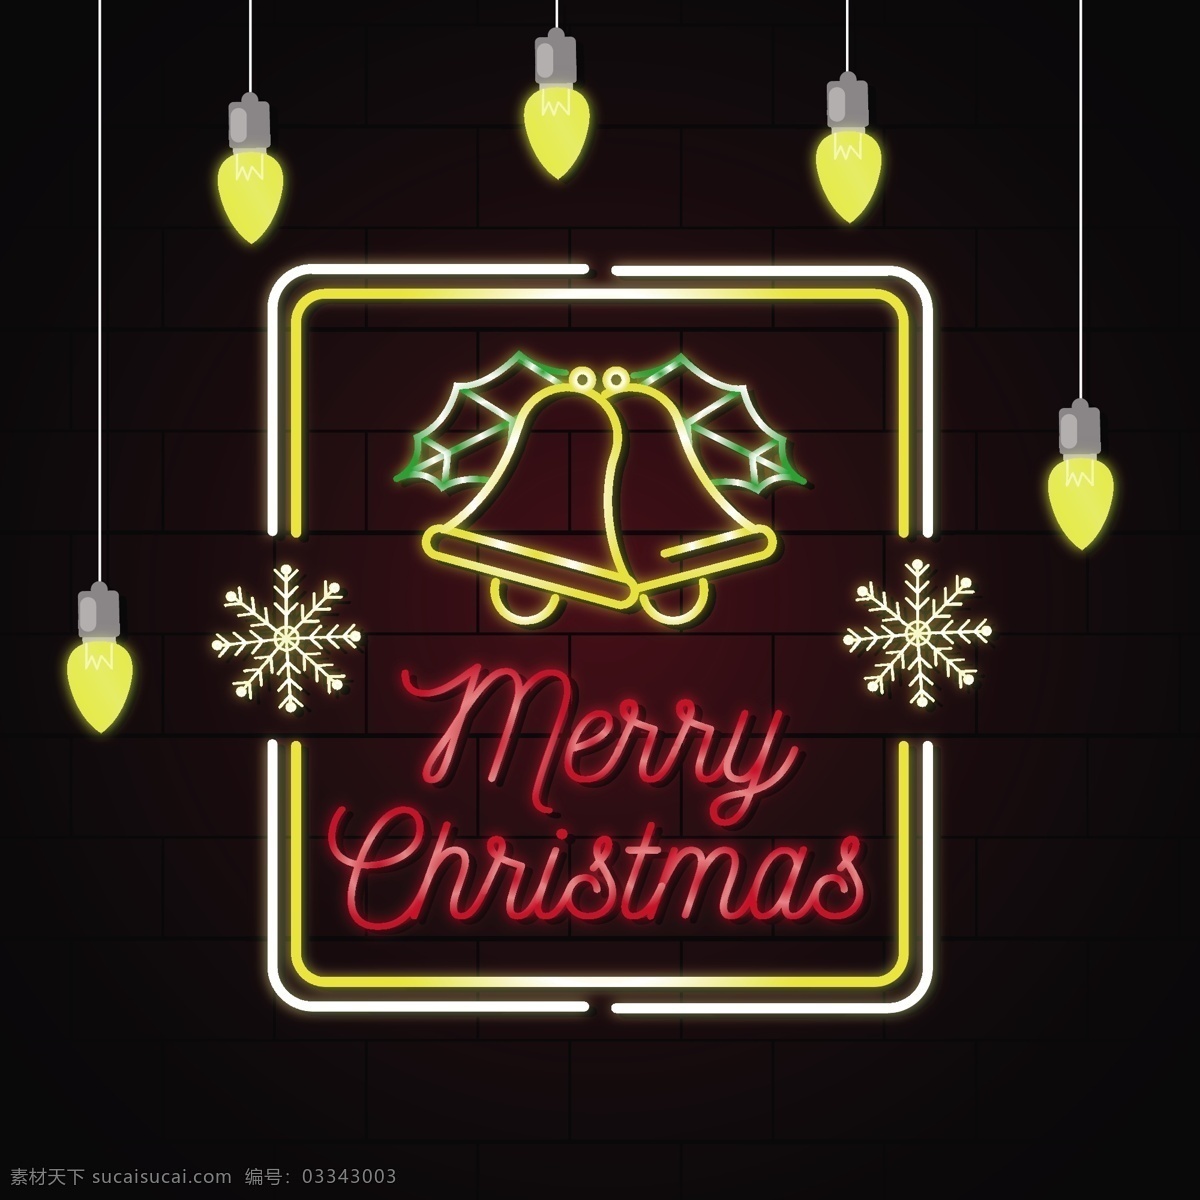 精美 圣诞节 霓虹灯 led 光效 元素 圣诞树 雪人 圣诞节素材 圣诞节礼物 动态 圣诞节海报 圣诞节图片 光效led灯 圣诞快乐 海报 新年祝贺